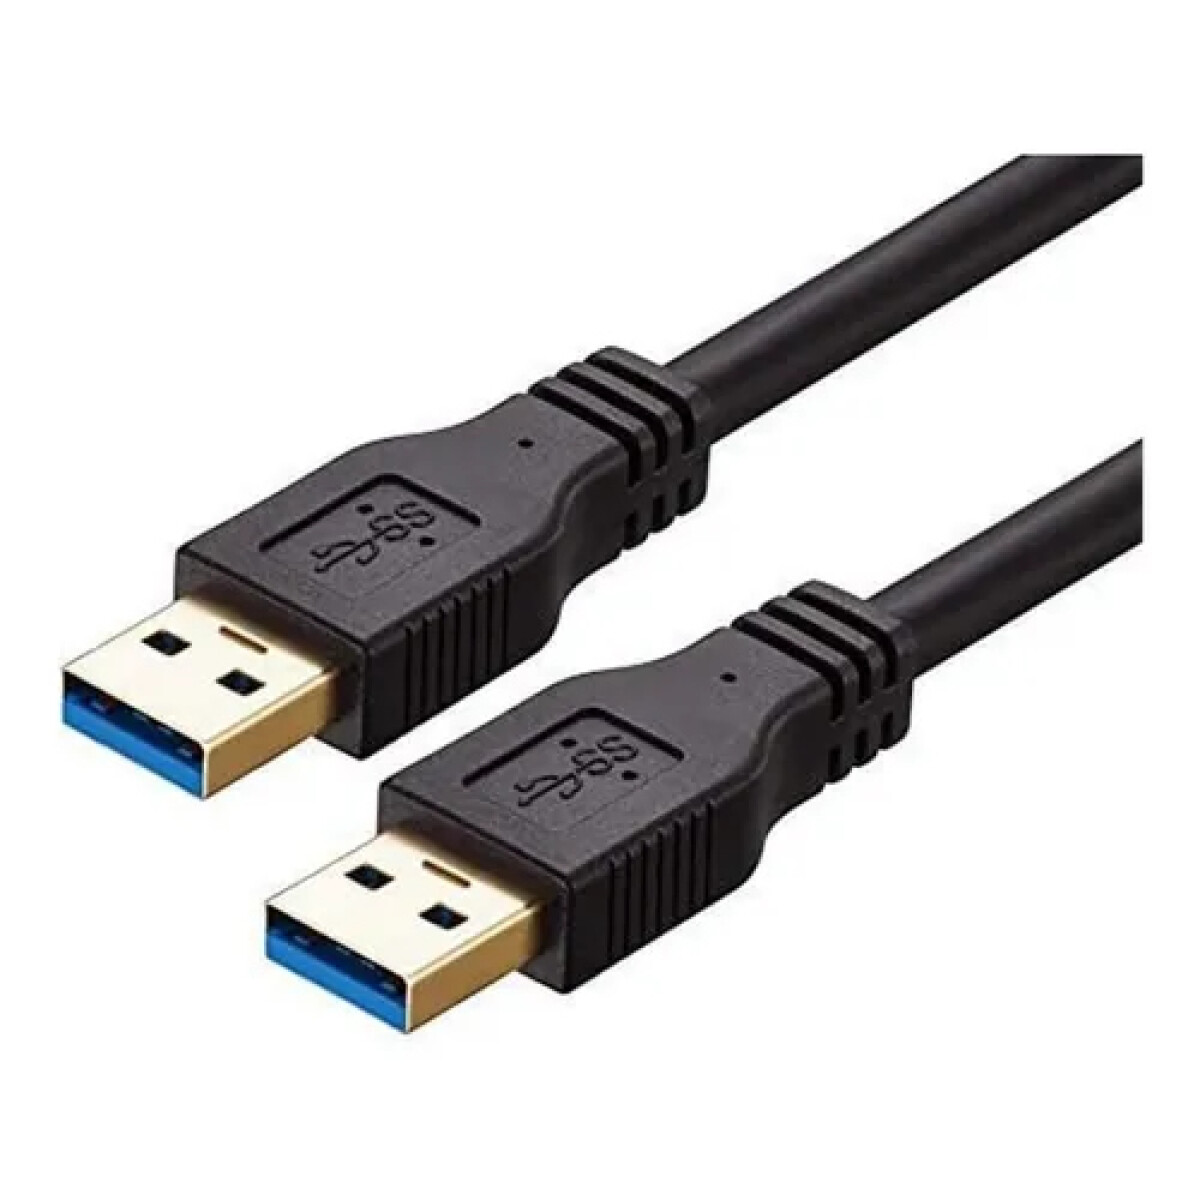 Cable USB 3.0 macho - macho de 1 metro de largo 